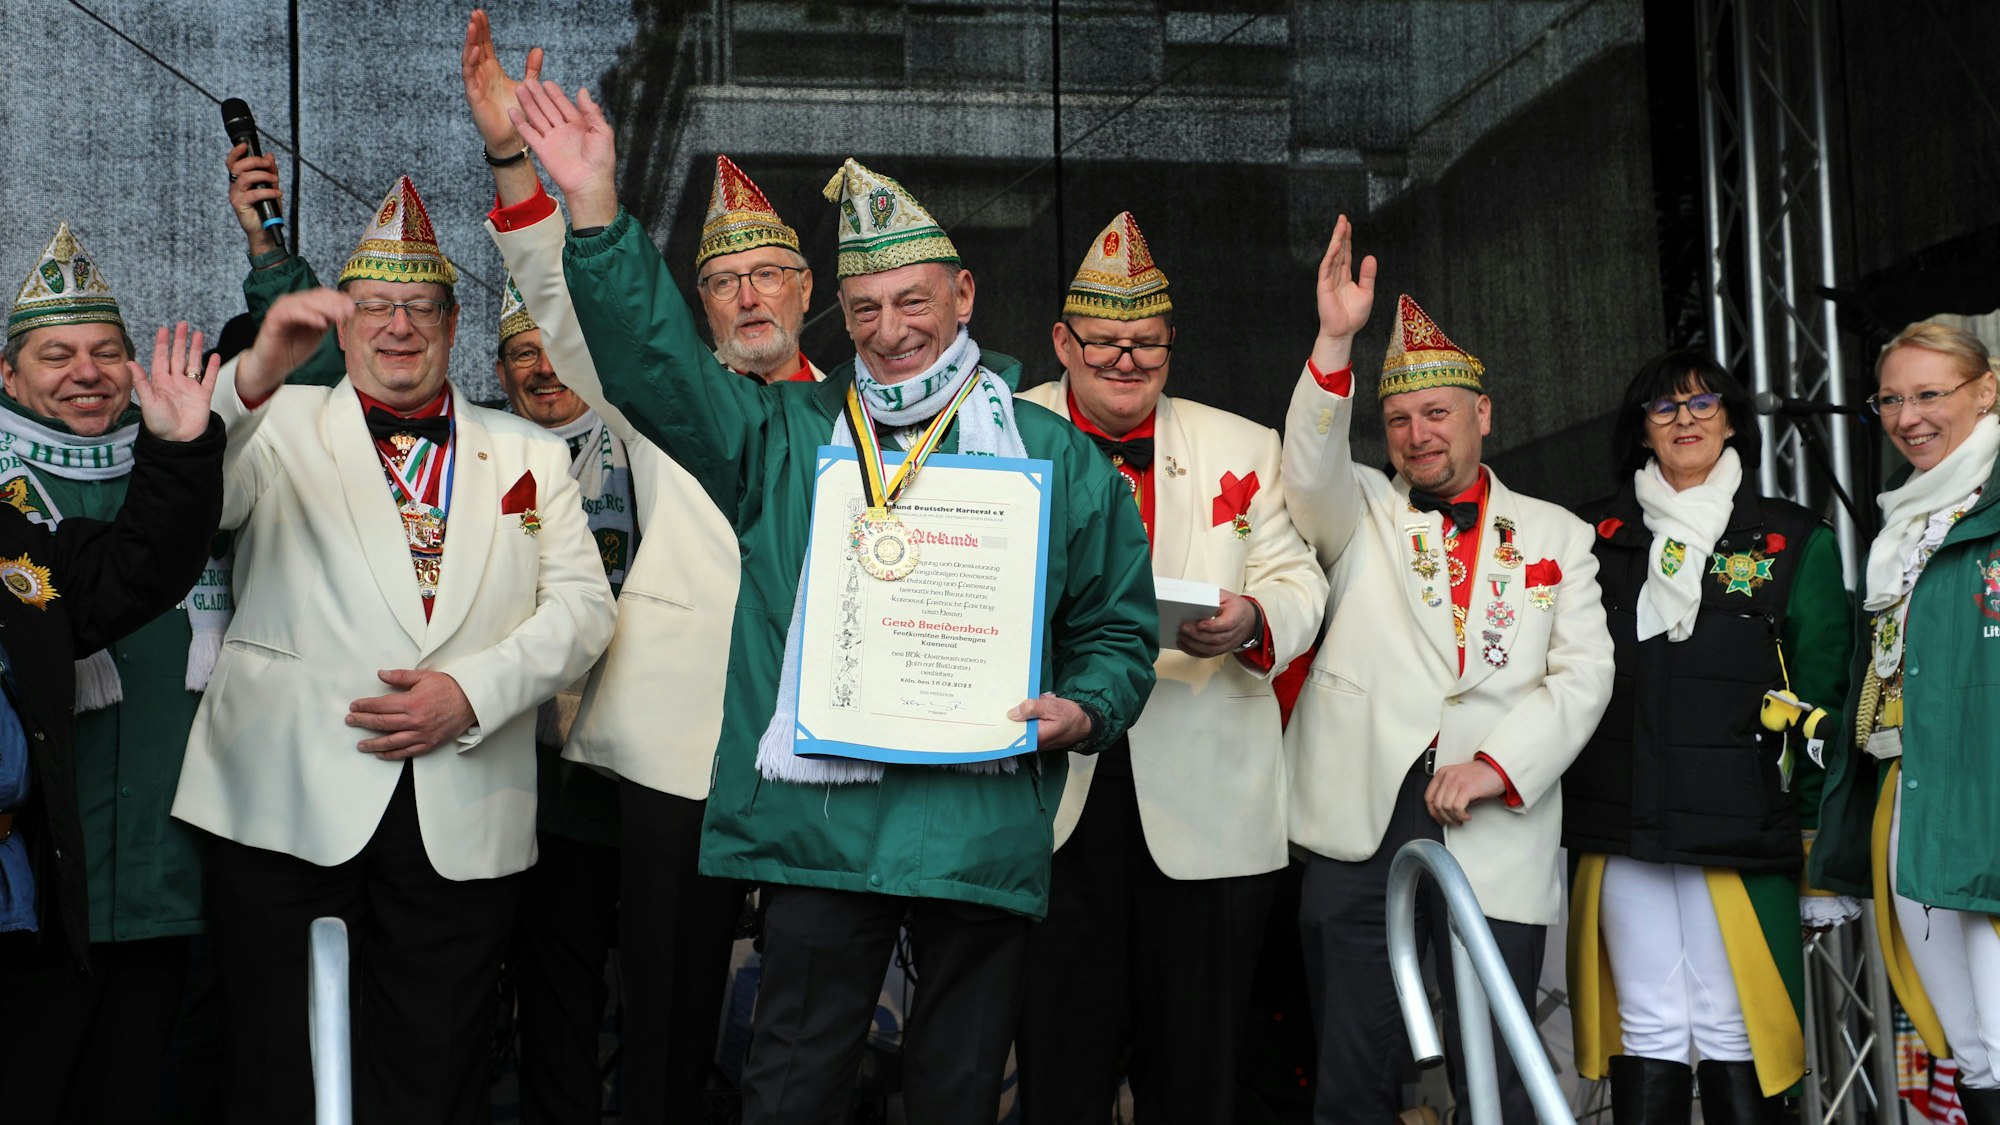 Gerd Breidenbach nach der Auszeichnung mit dem BDK-Orden in Gold mit Brillanten durch den RRB-Vorstand (hinten).